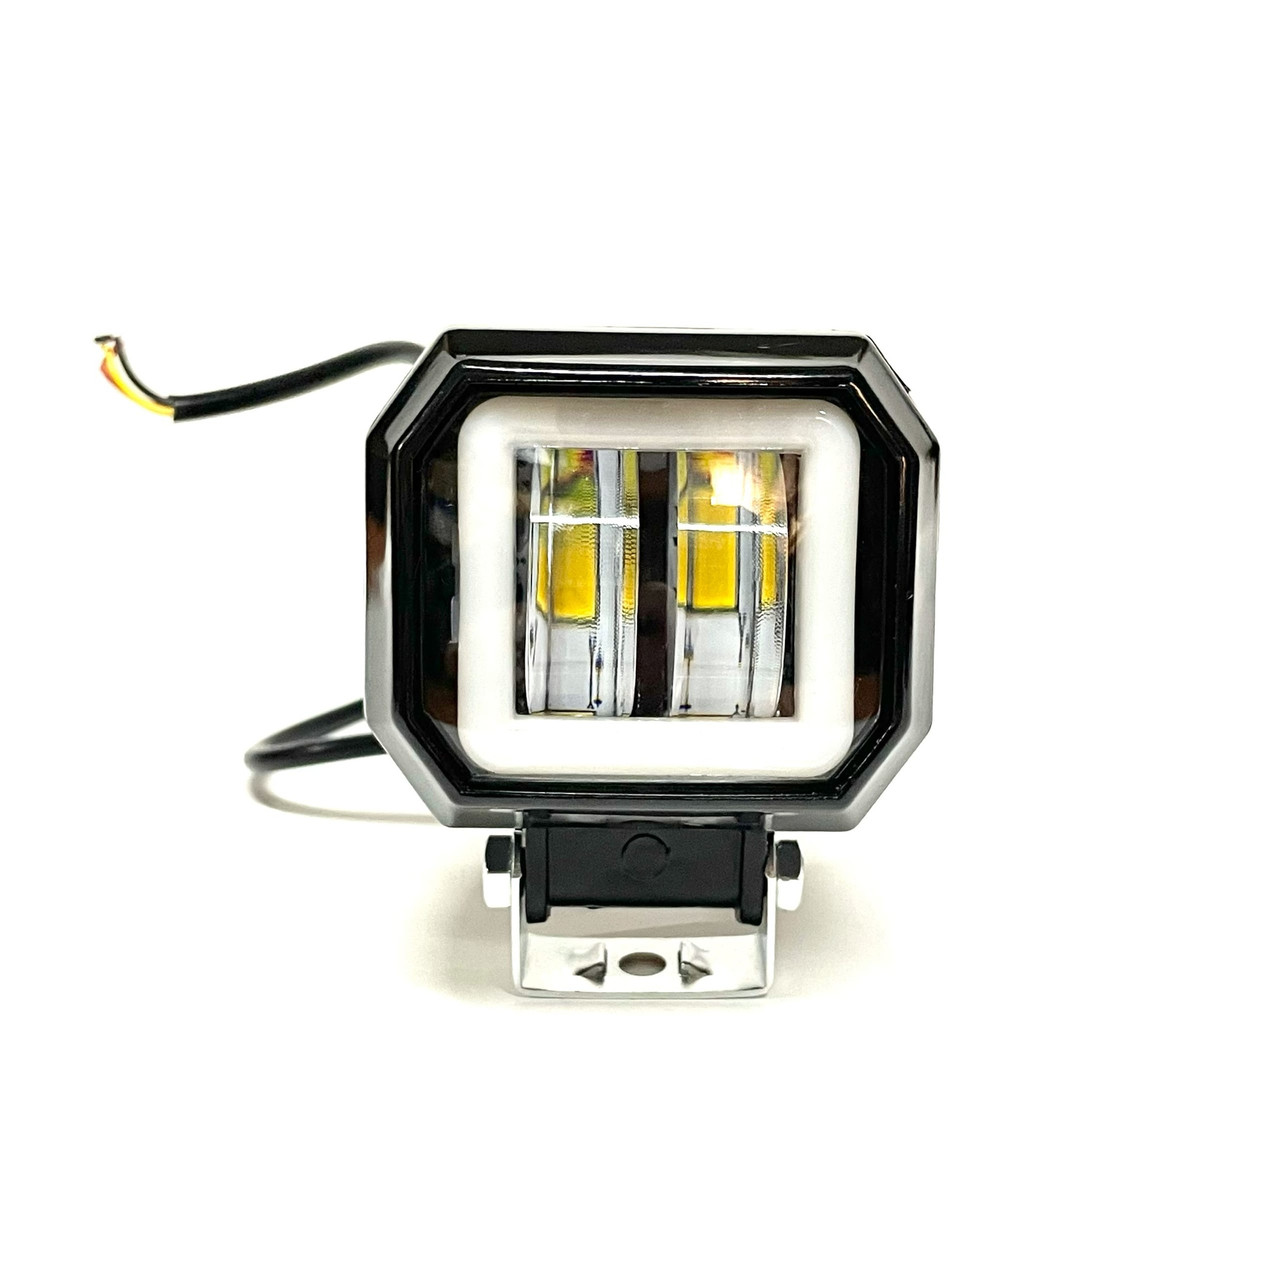 Светодиоды рабочего света / ПТФ WL 10×2-S белый + жёлтый